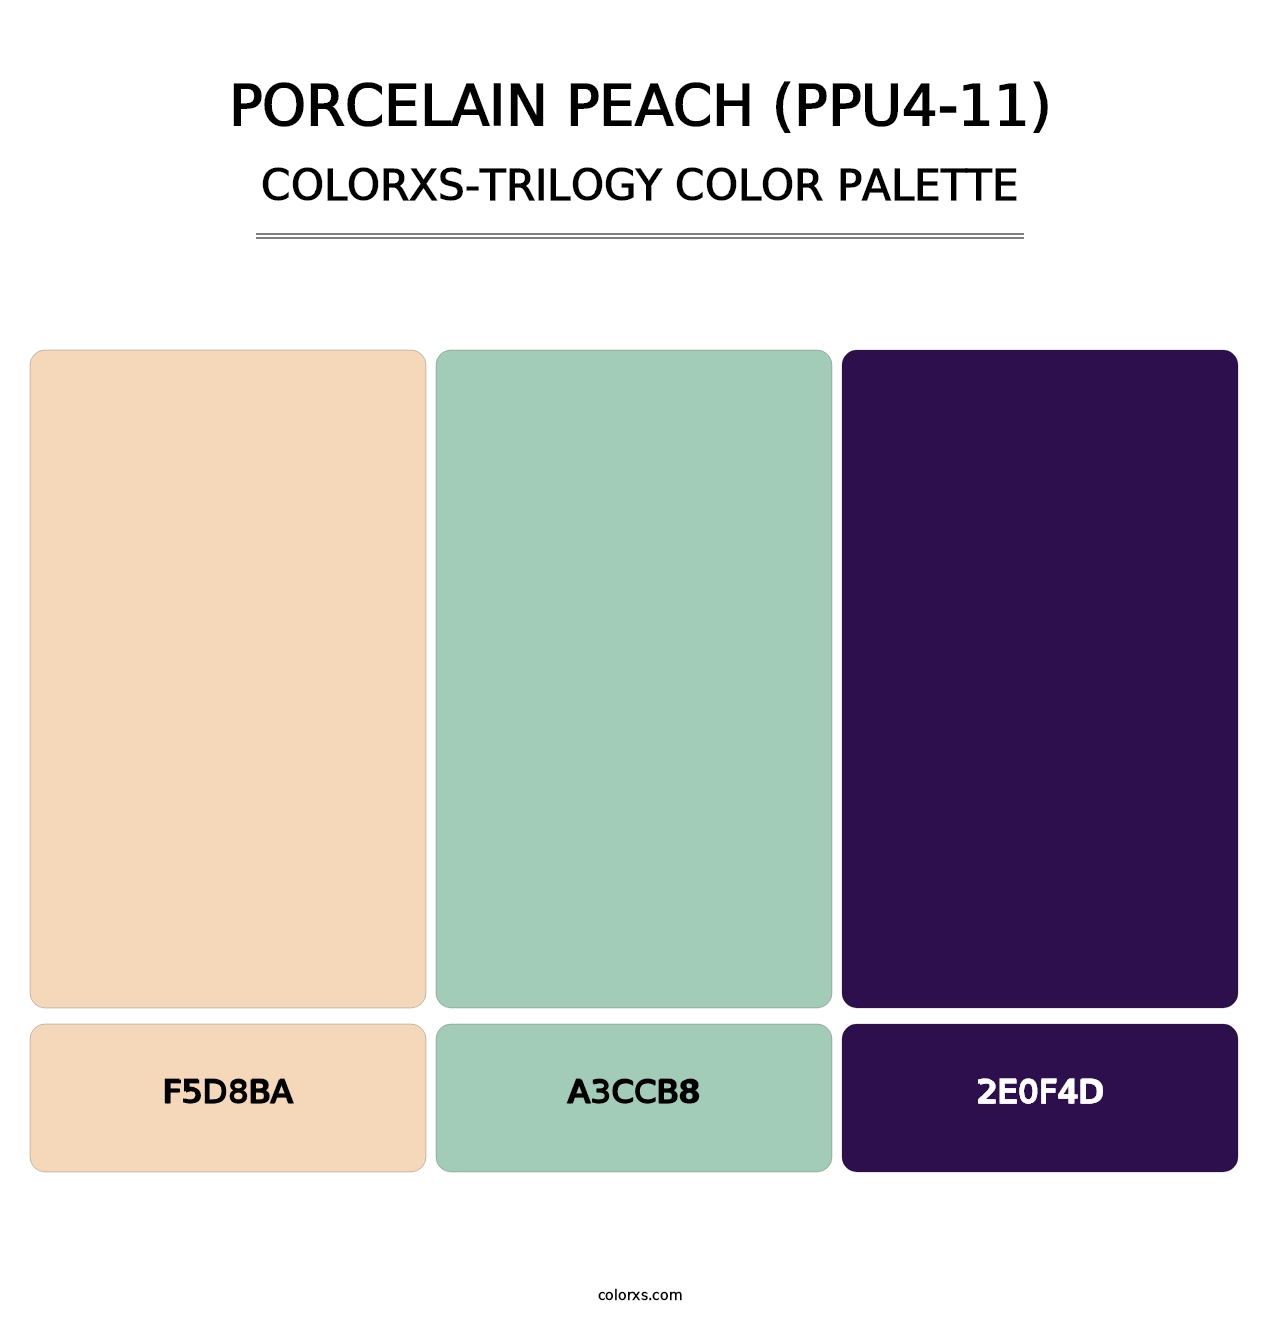 Porcelain Peach (PPU4-11) - Colorxs Trilogy Palette